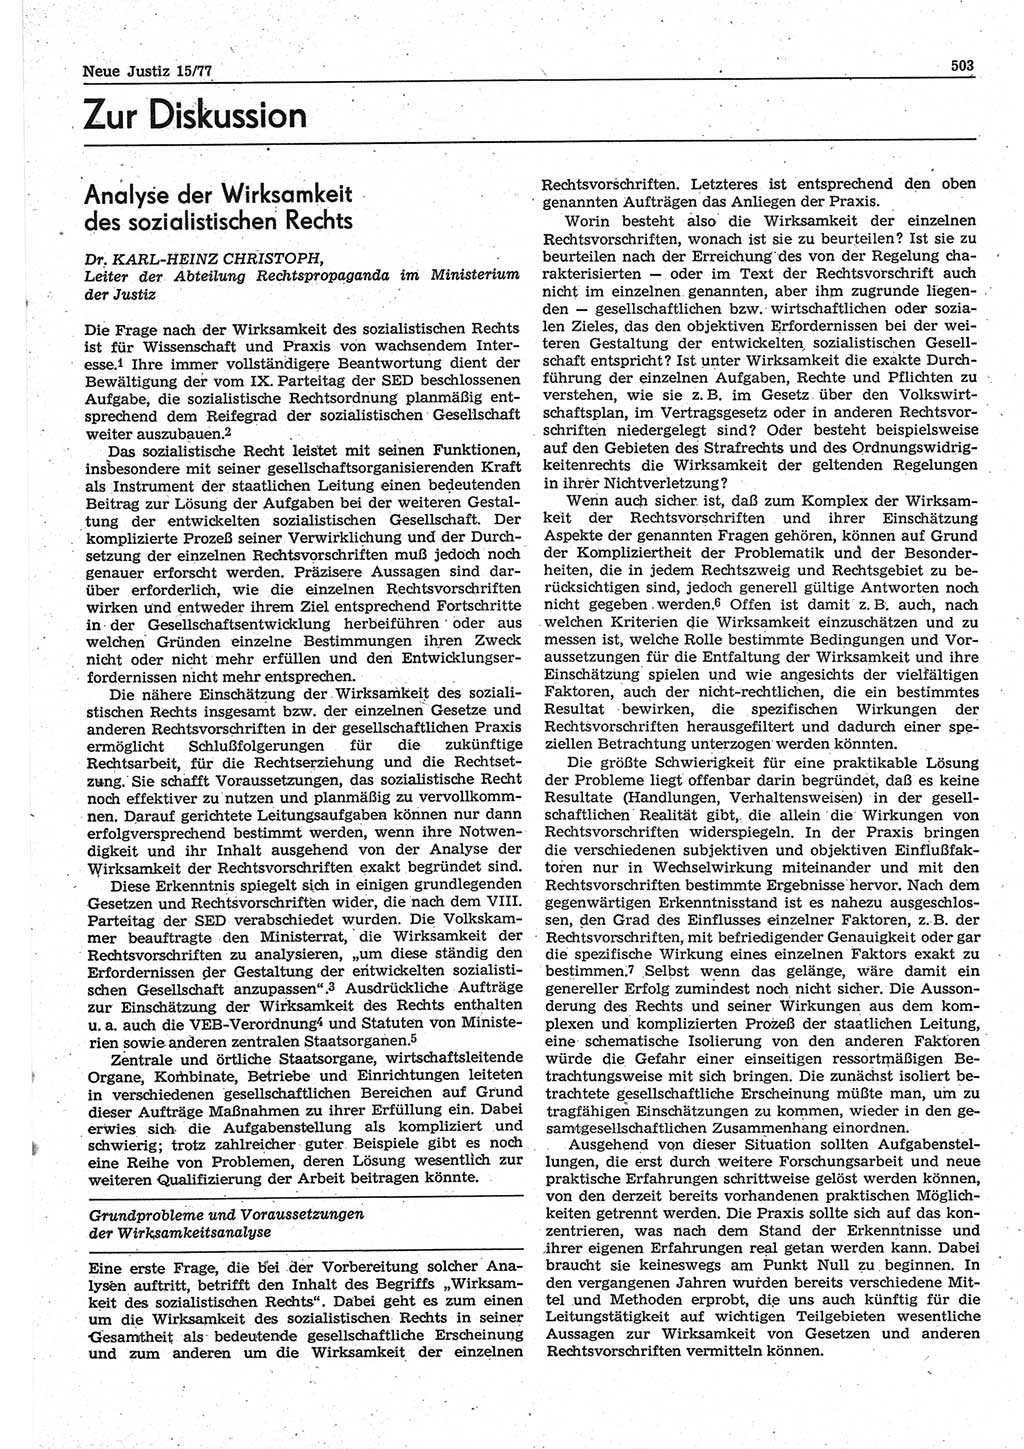 Neue Justiz (NJ), Zeitschrift für Recht und Rechtswissenschaft-Zeitschrift, sozialistisches Recht und Gesetzlichkeit, 31. Jahrgang 1977, Seite 503 (NJ DDR 1977, S. 503)